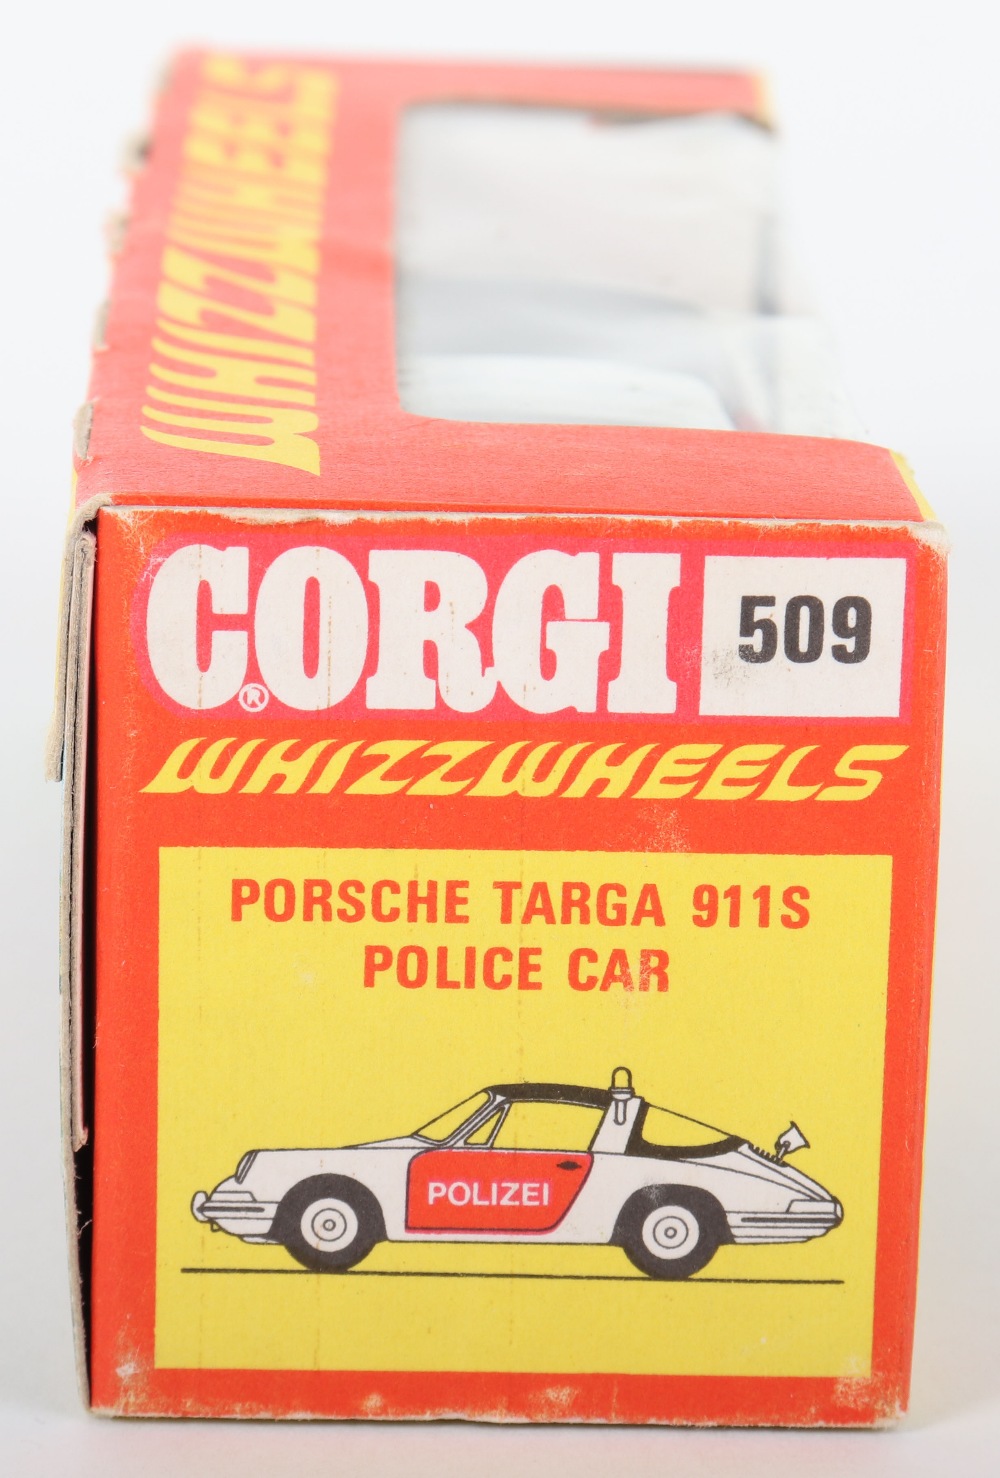 Corgi Toys 509 Porsche Targa 911S Police Car - Image 2 of 5